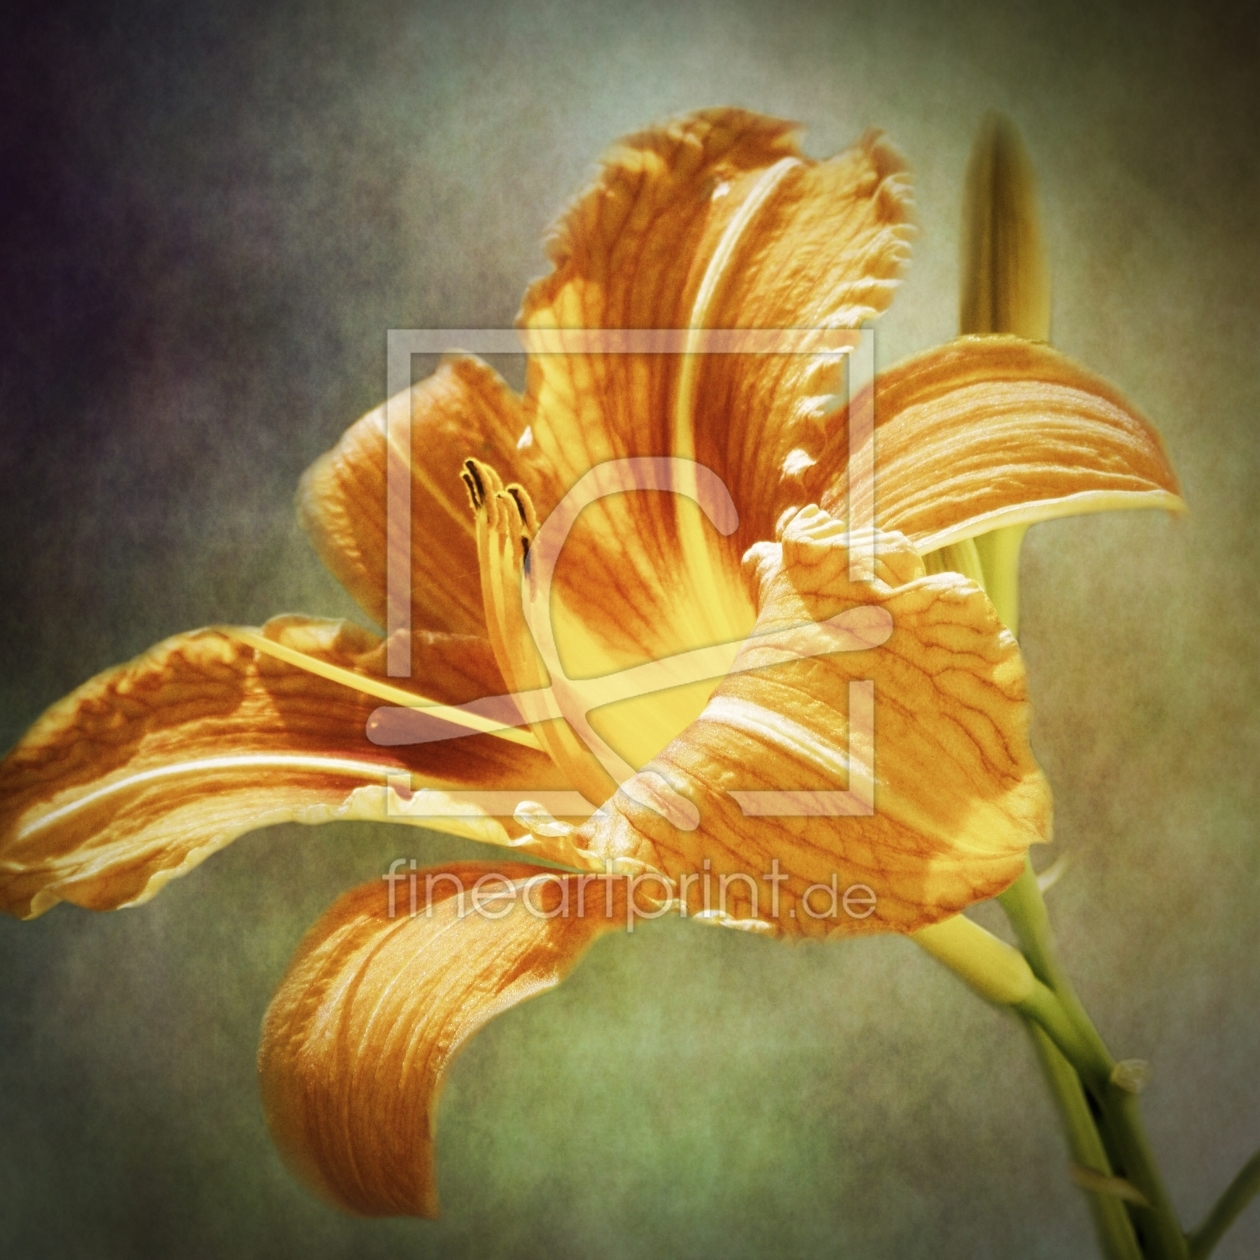 Bild-Nr.: 10573281 lily vintage erstellt von PaulaPanther